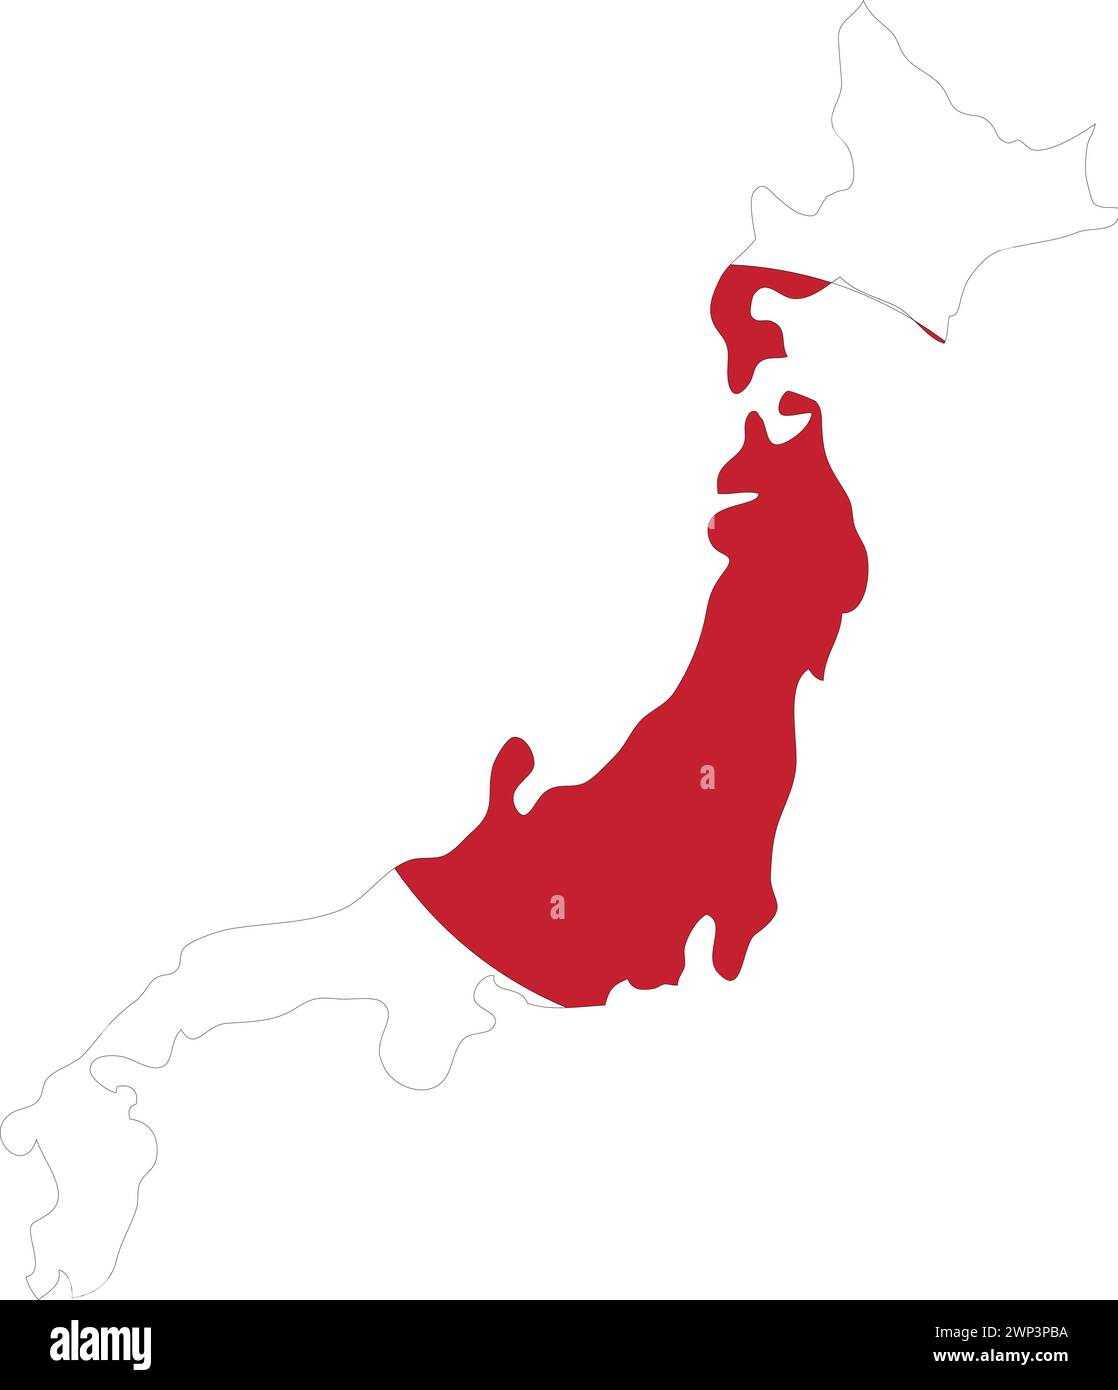 Drapeau du Japon carte du Japon, carte du Japon avec drapeau, carte du pays, Japon avec drapeau, drapeau de la nation Illustration de Vecteur